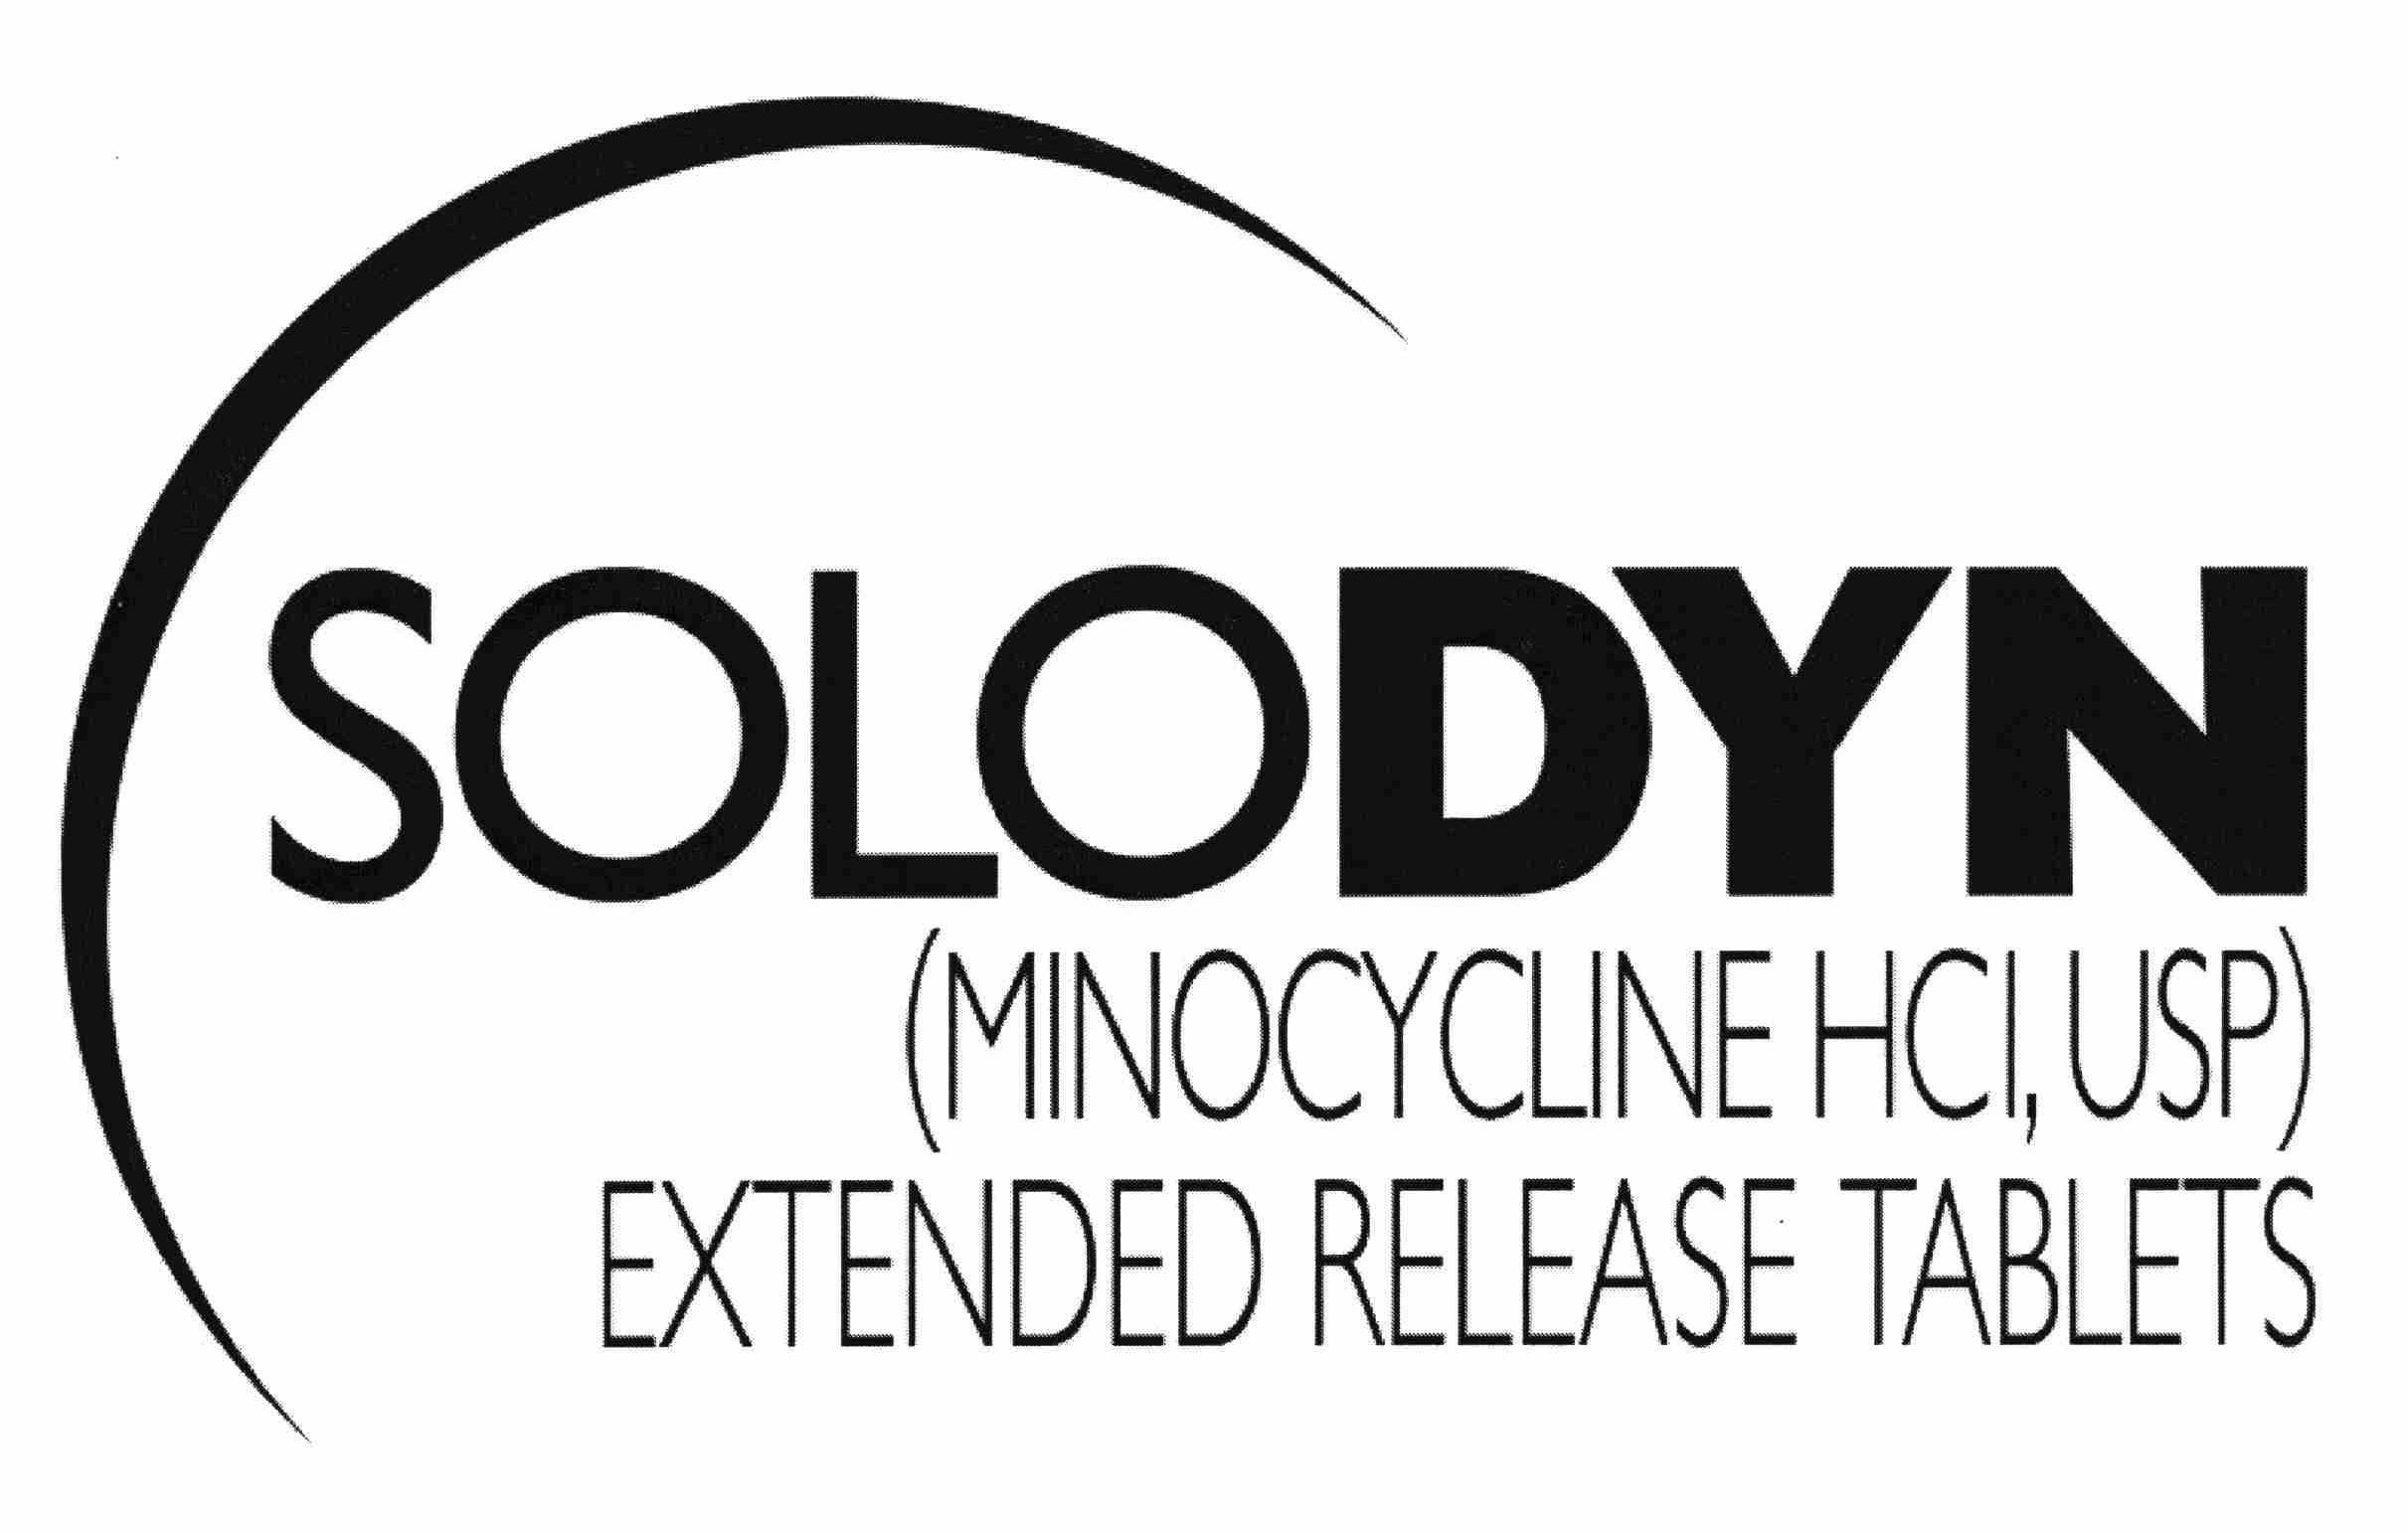  SOLODYN (MINOCYCLINE HCI, USP) EXTENDED RELEASE TABLETS